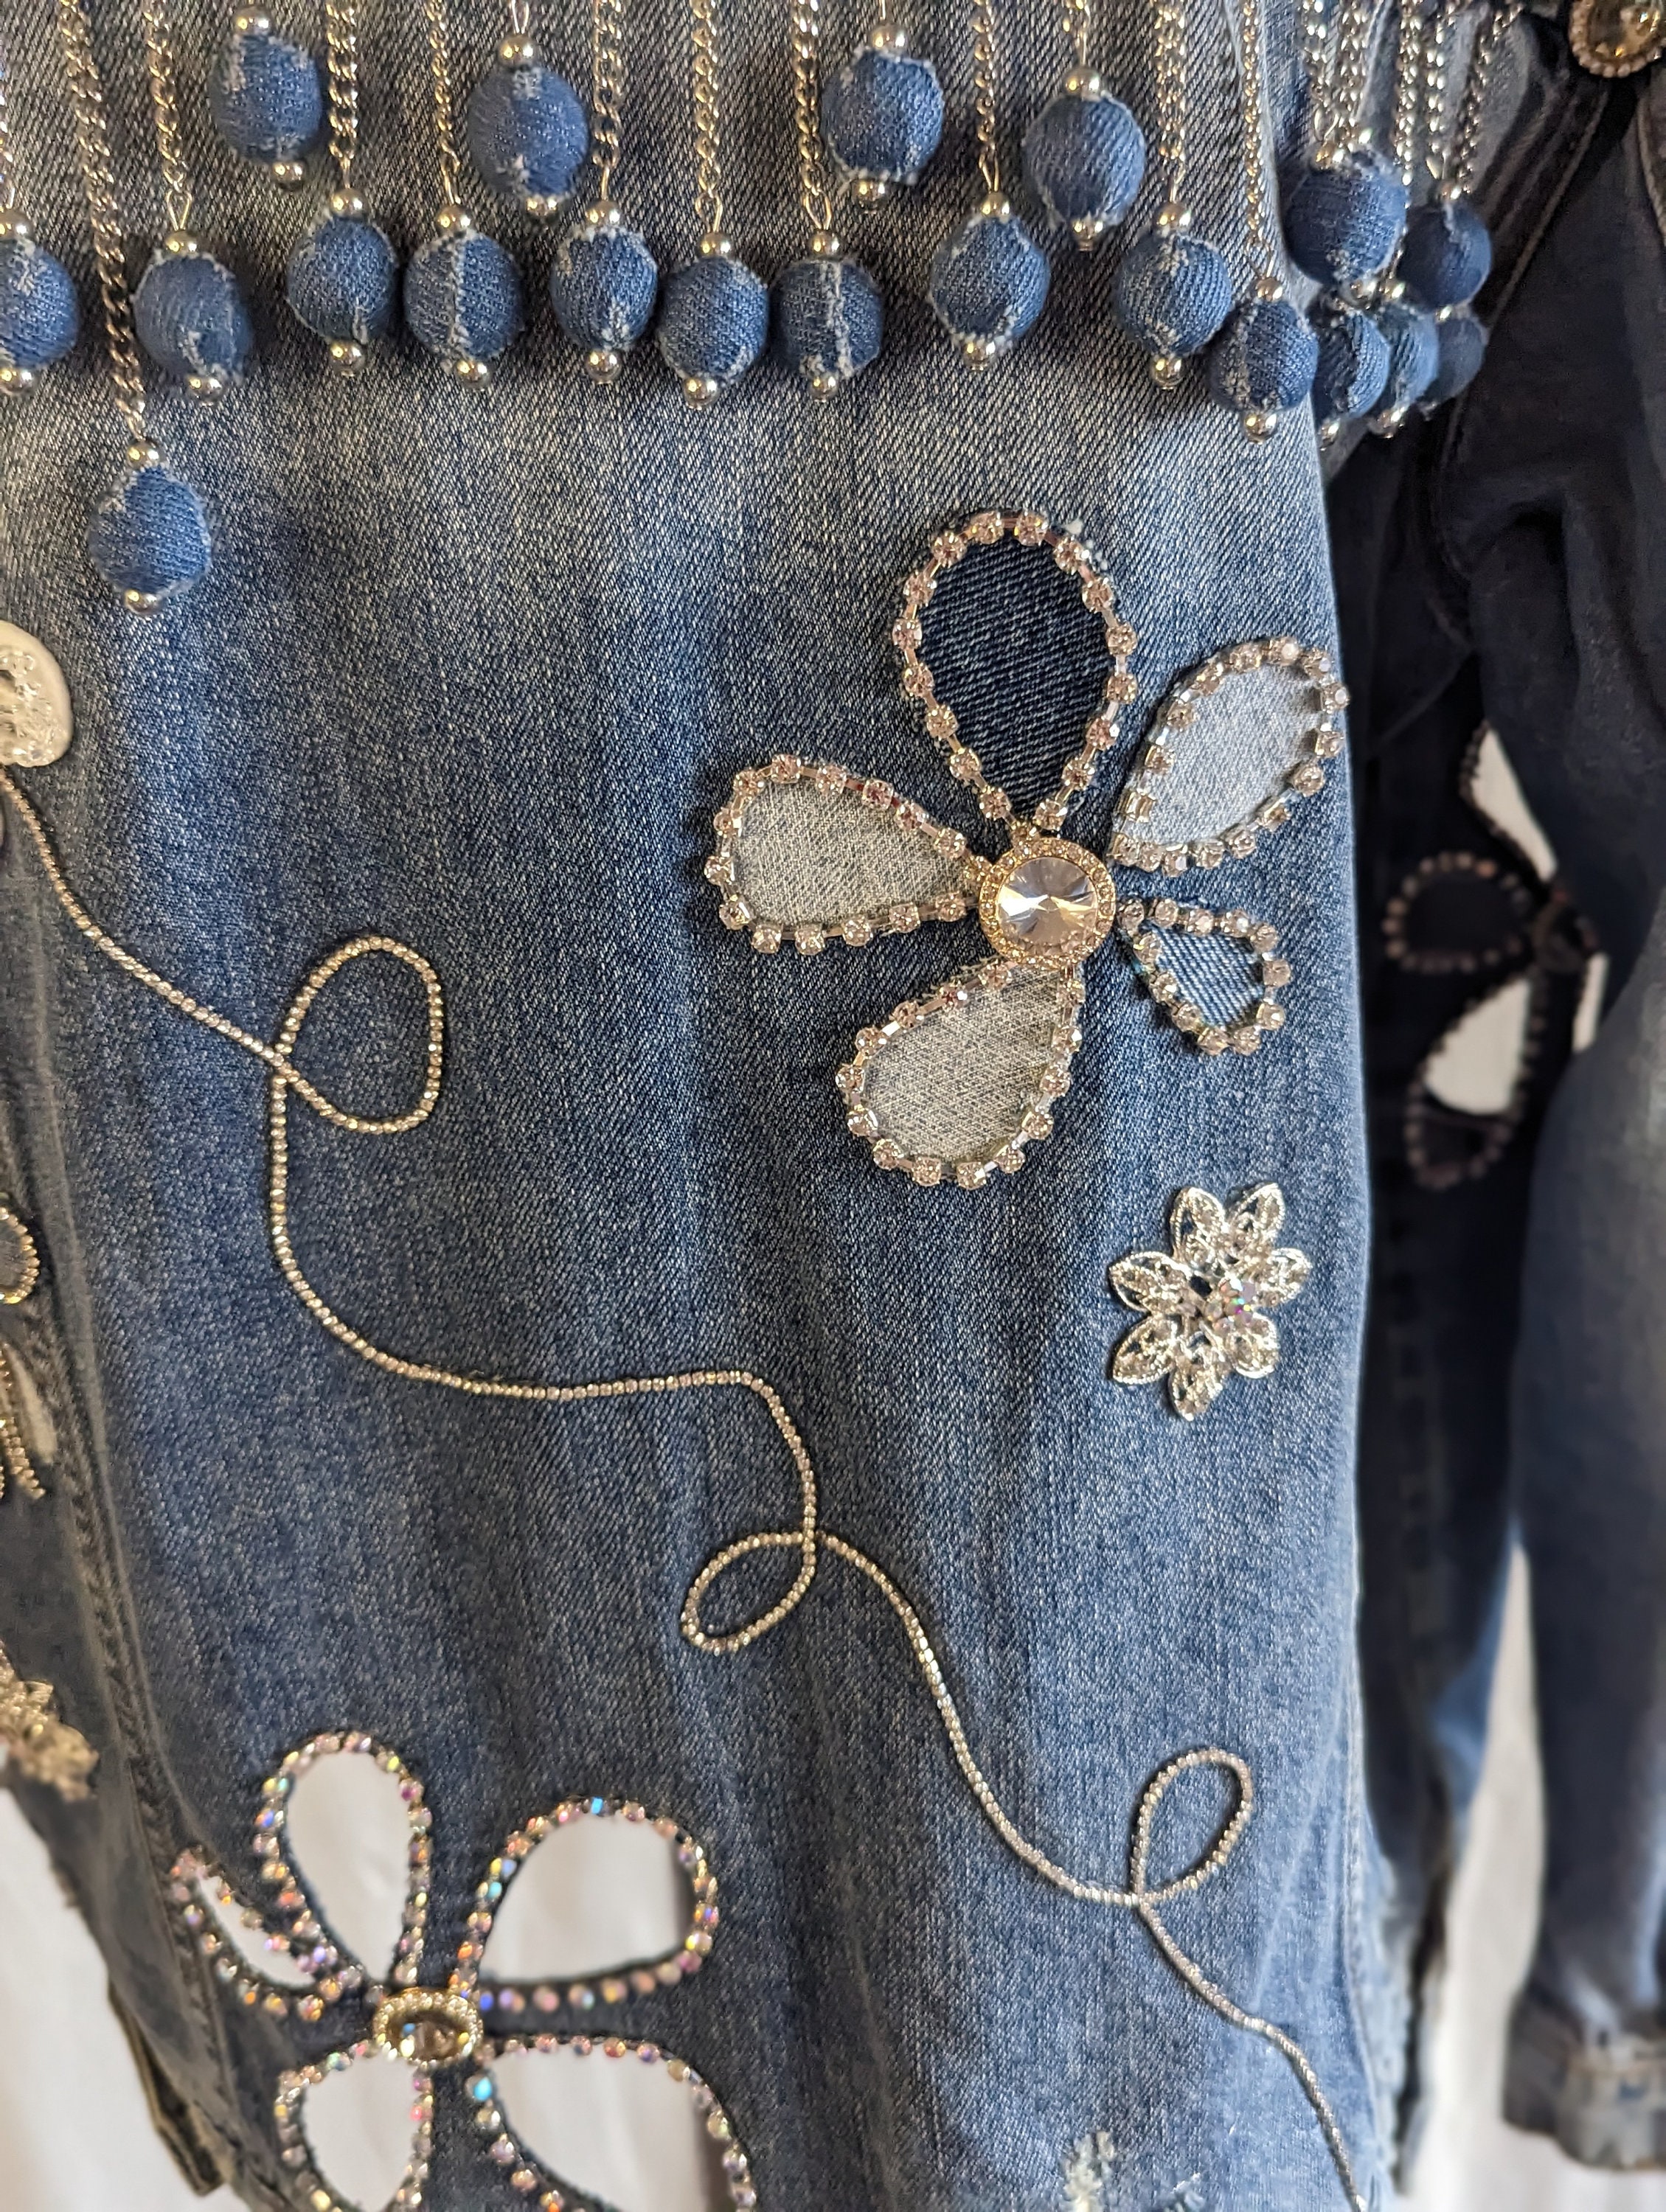 Cut Out Denim Flowers on Blue Denim Jacket. Embellished Denim - Etsy